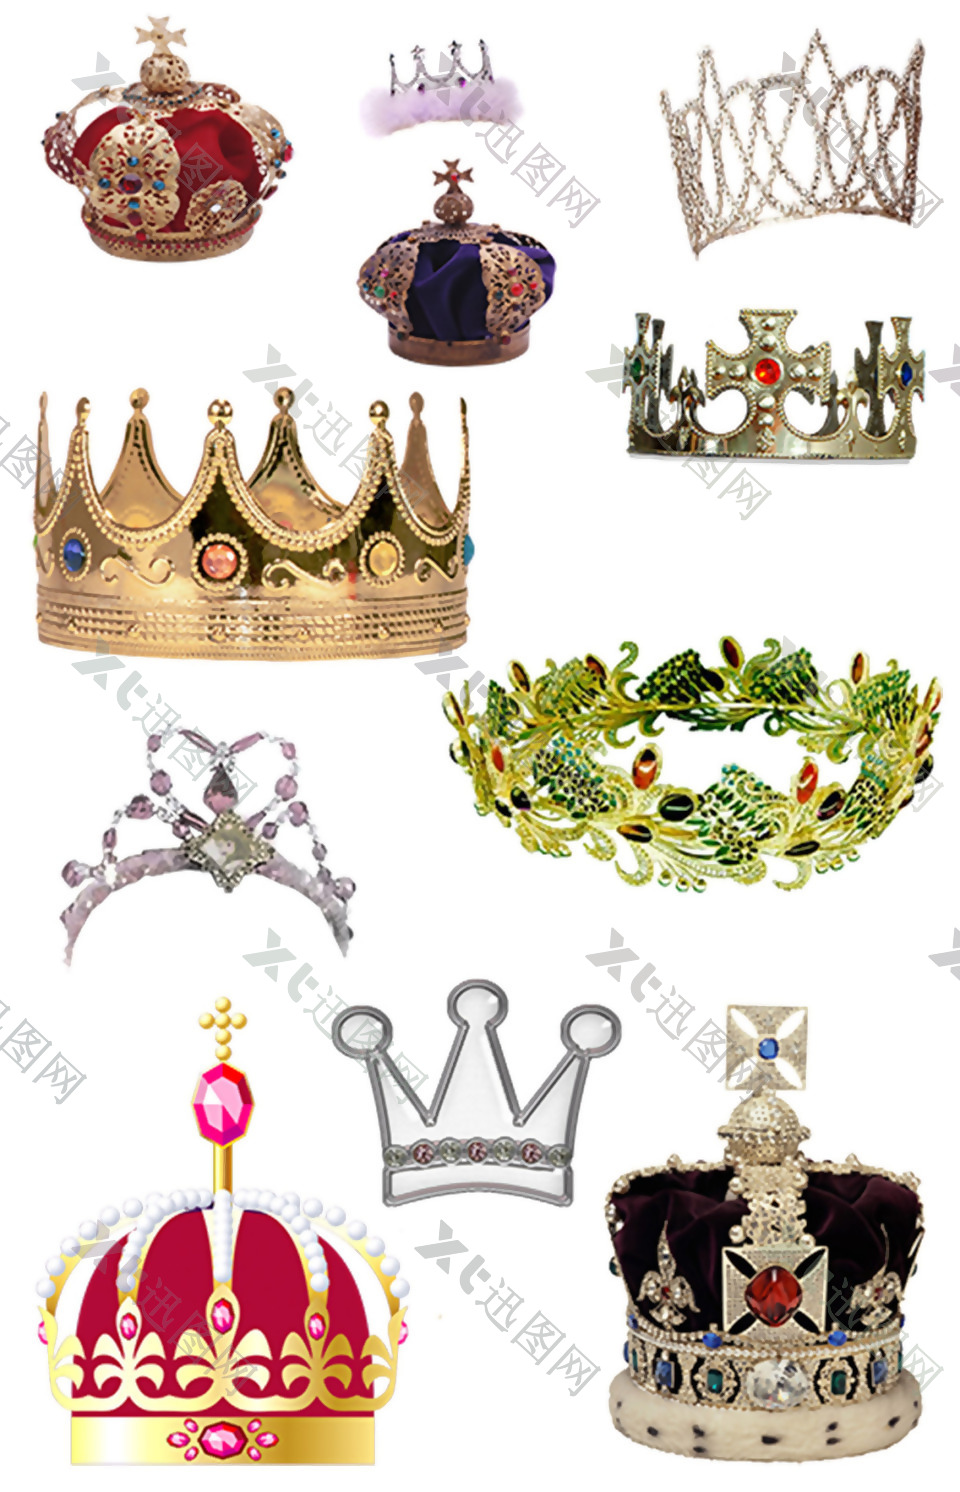 皇冠装饰图案集合